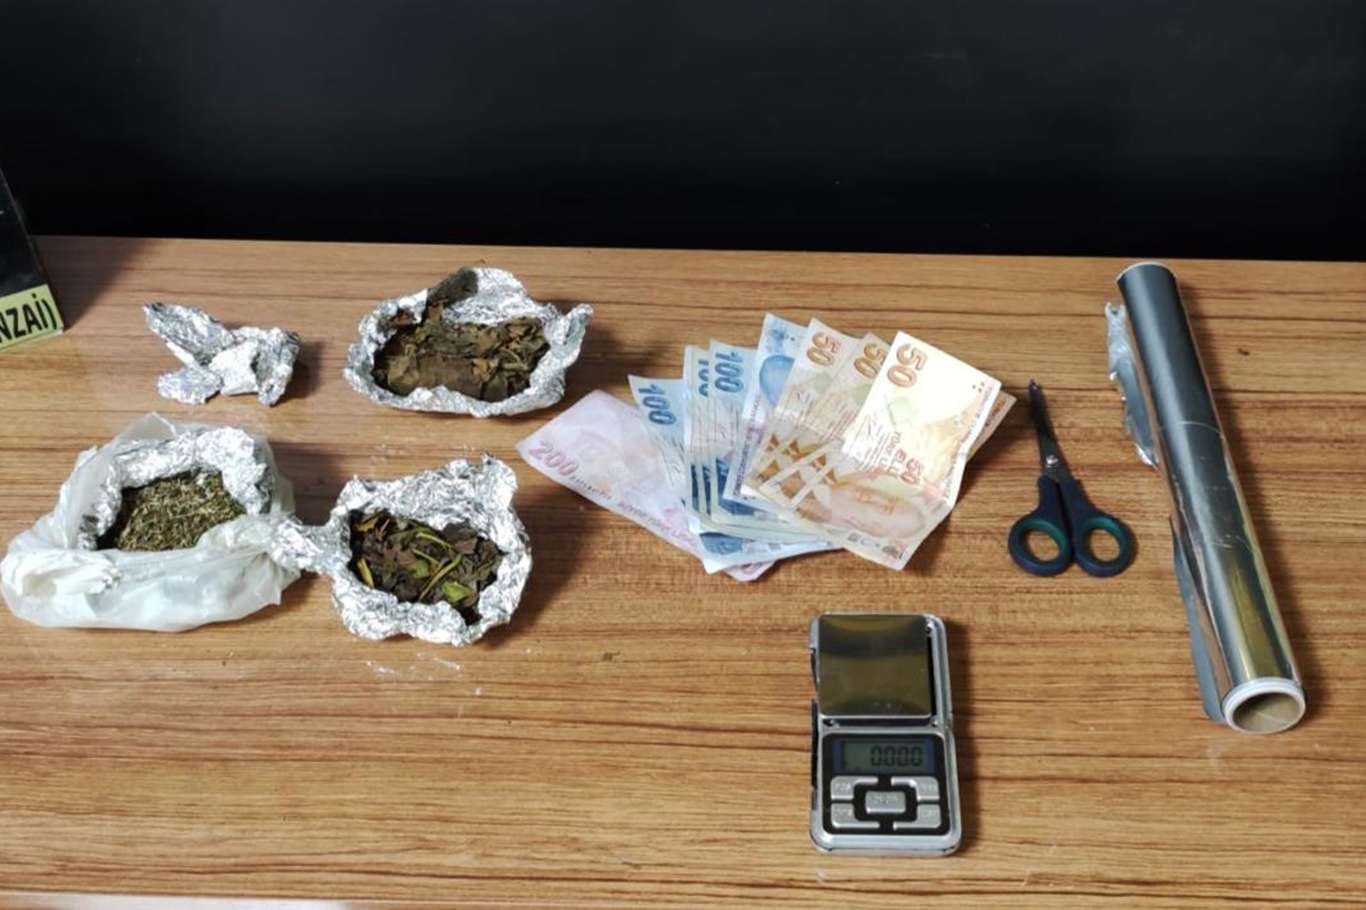 Şanlıurfa'da uyuşturucu ile mücadele kapsamında 10 şüpheli tutuklandı